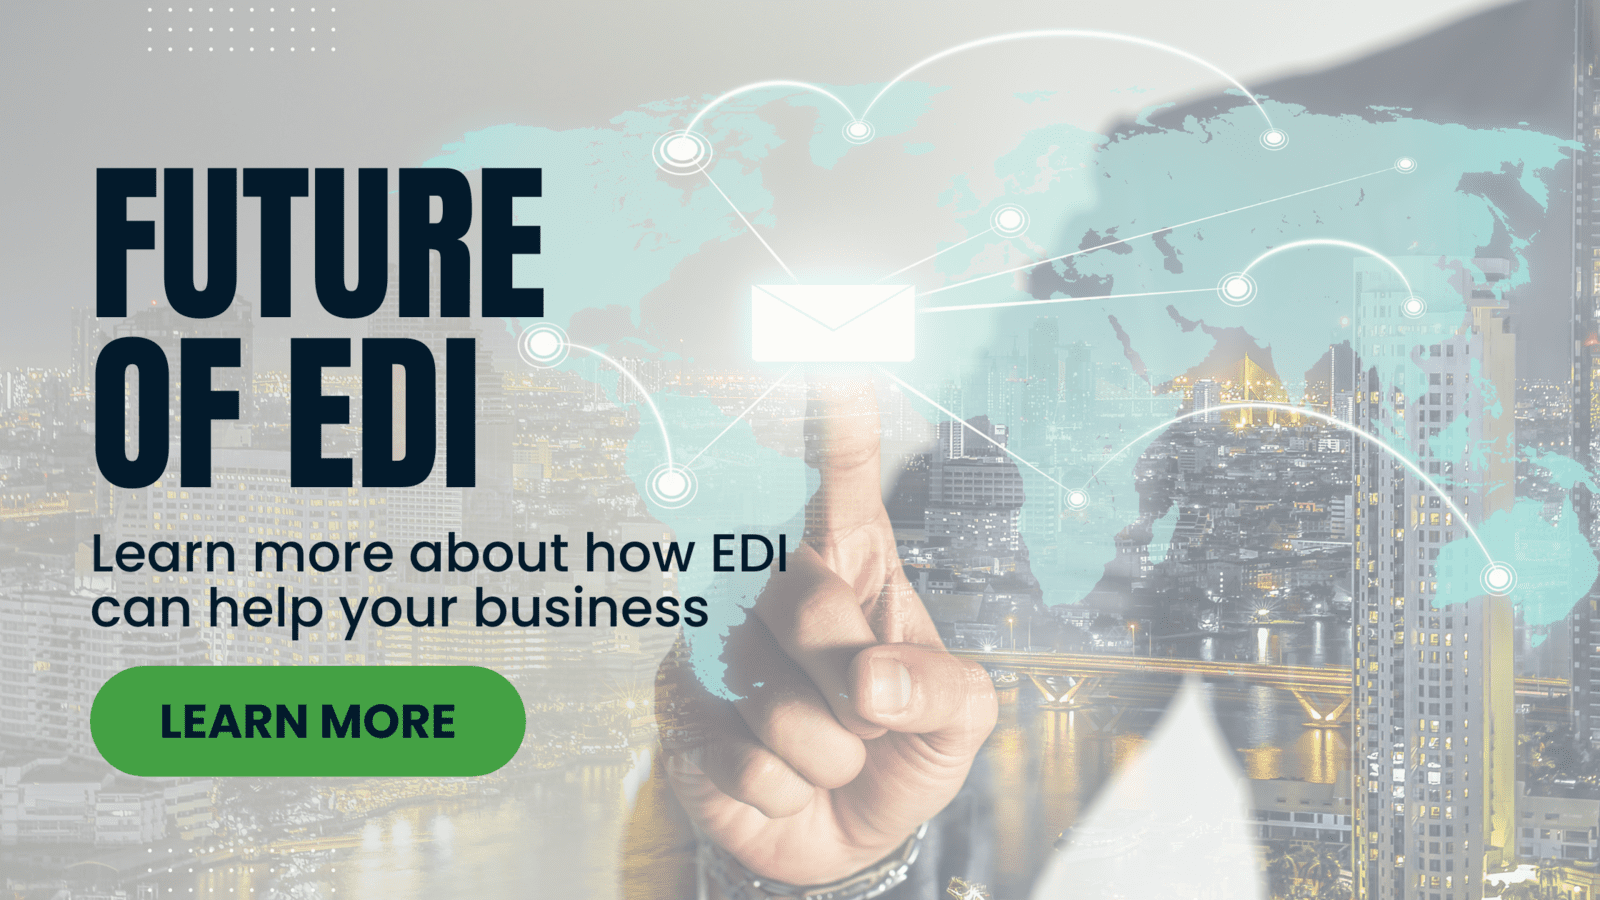 The Future of EDI